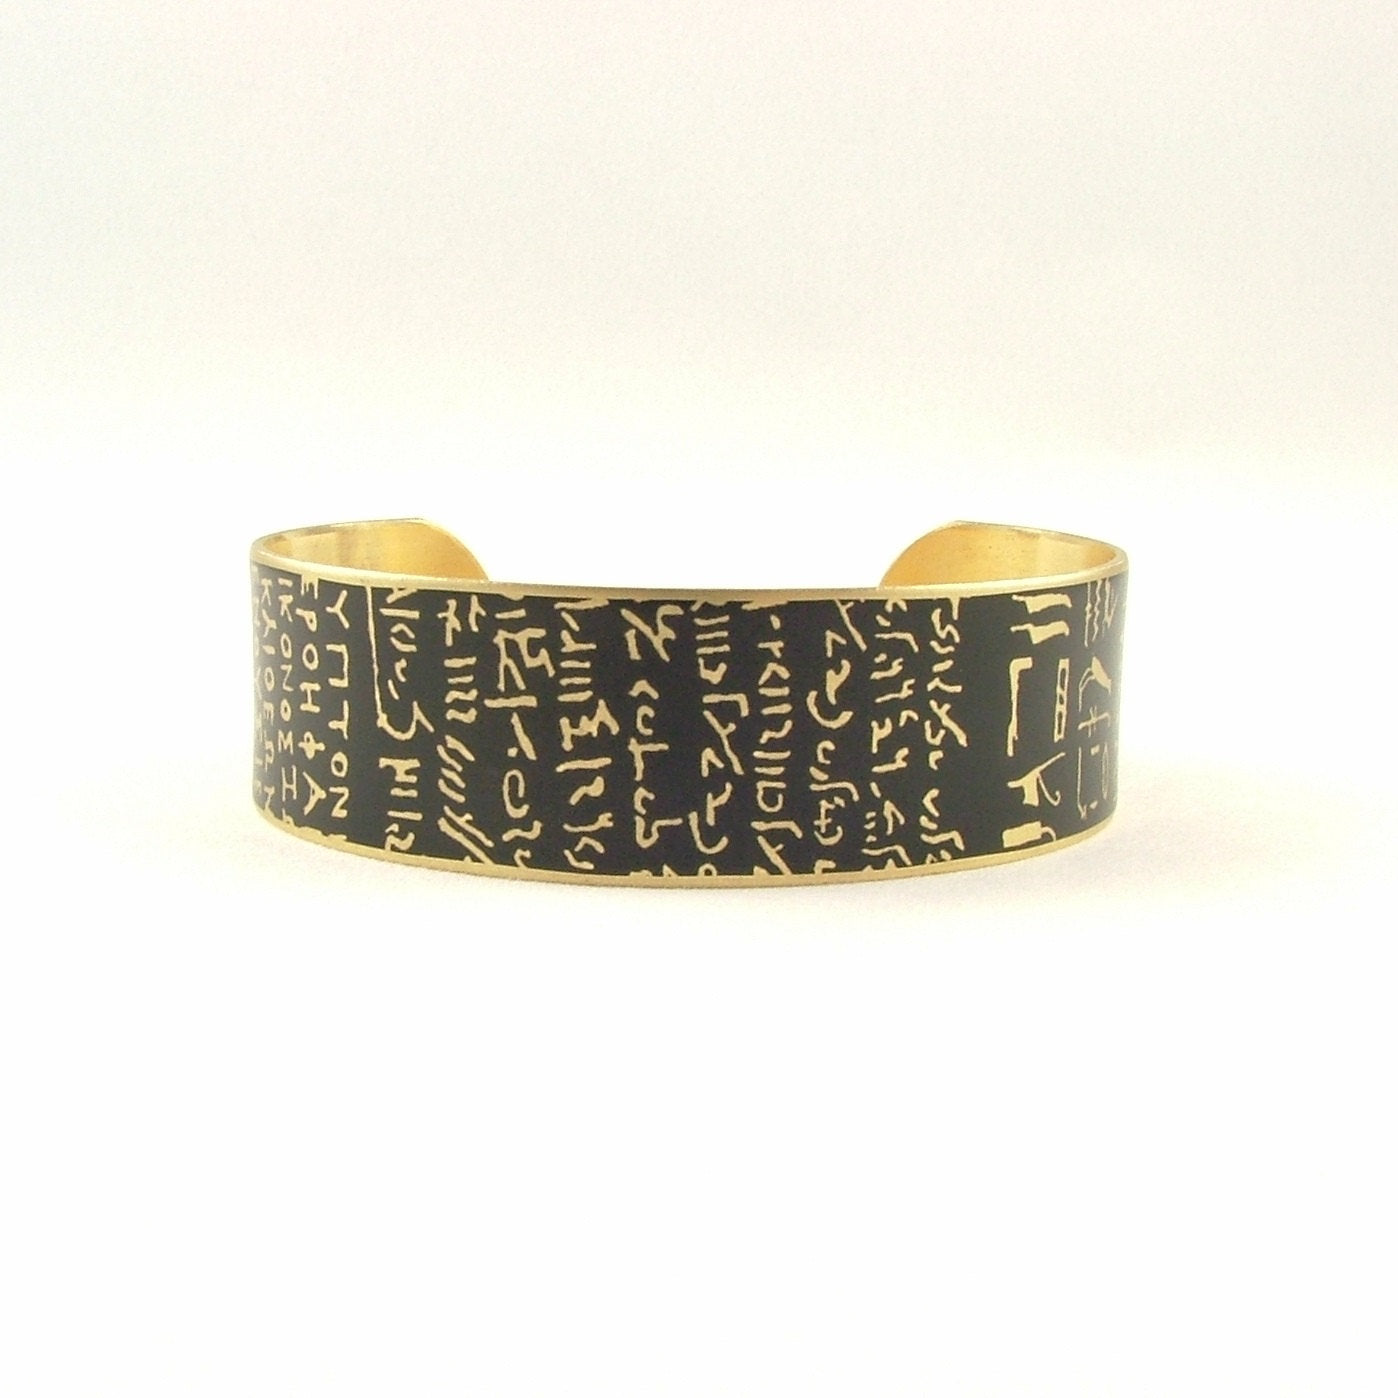 Rosetta Stone Cuff Bracelet